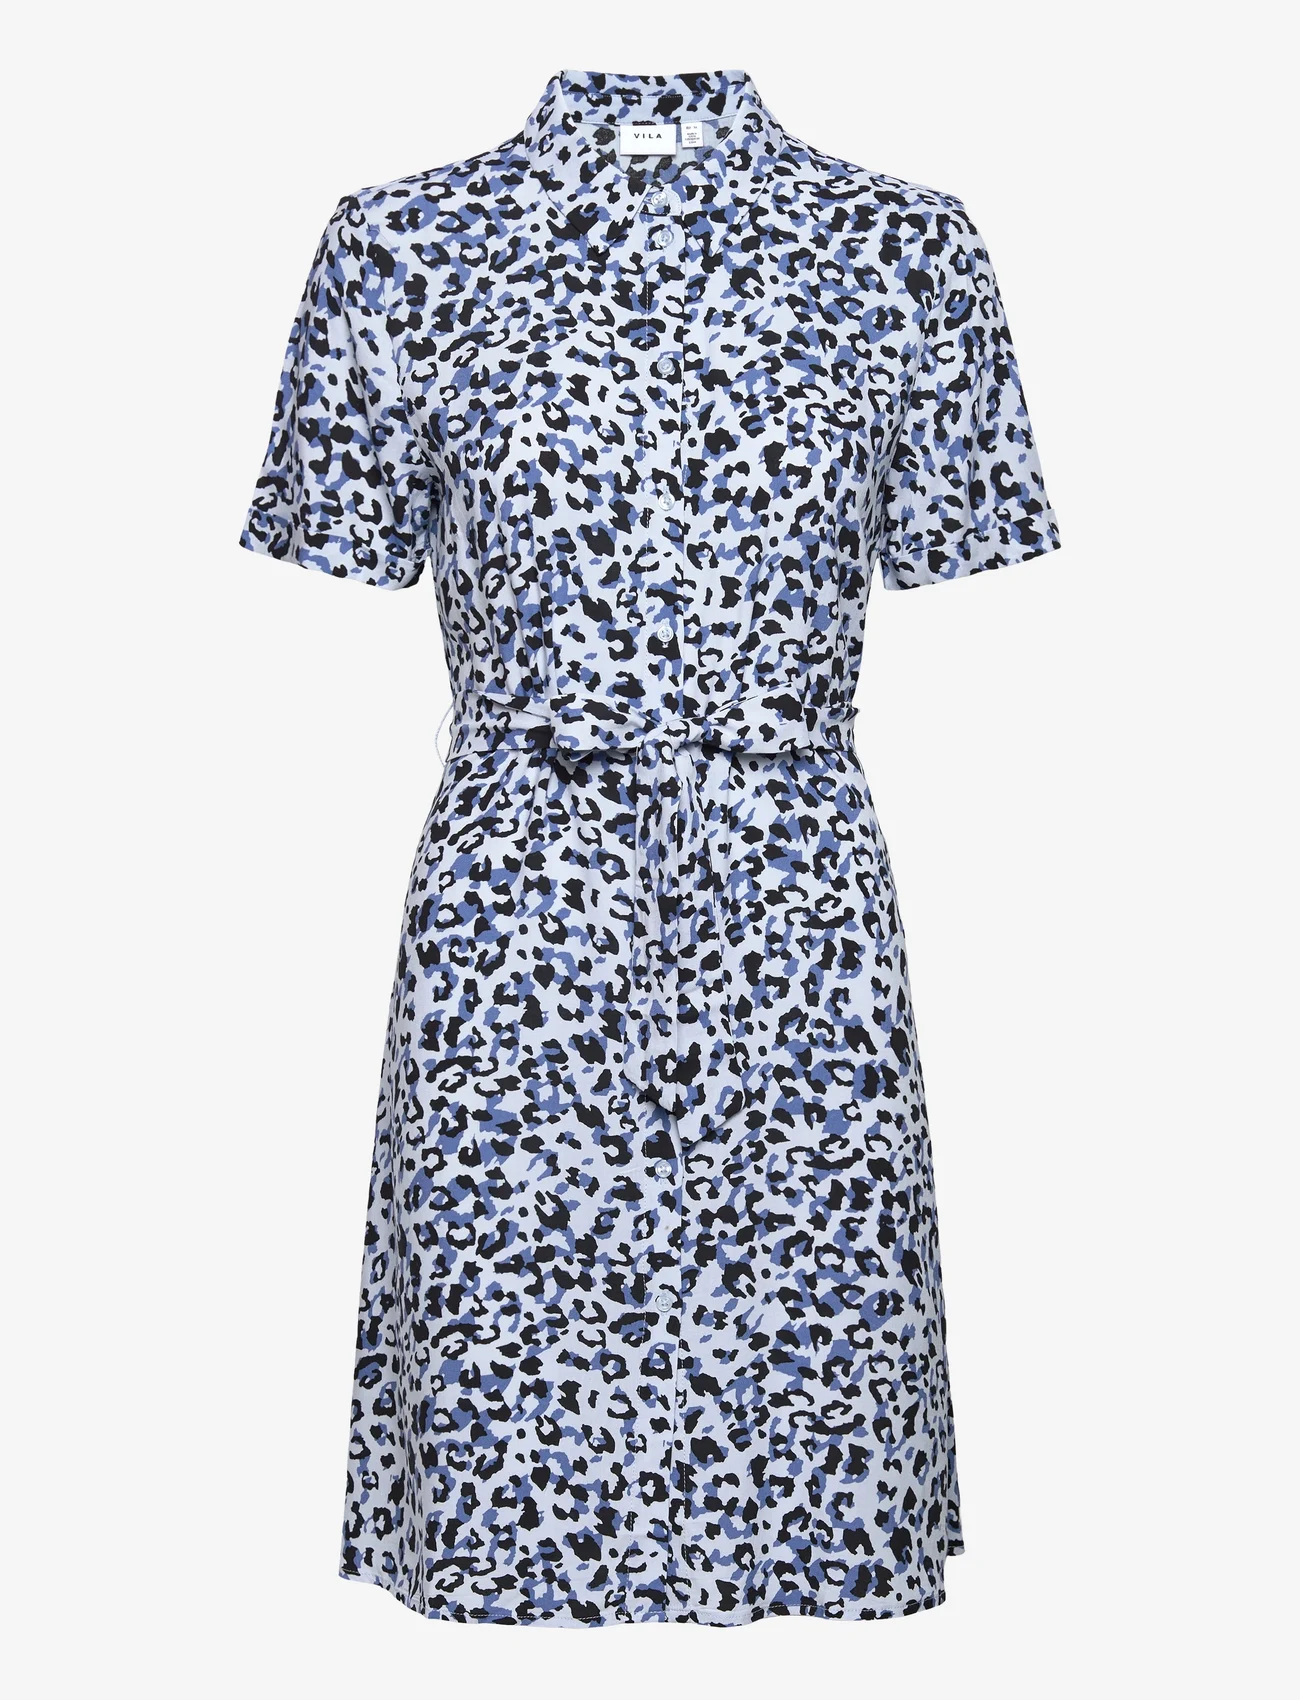 Vila - VIPAYA S/S SHIRT DRESS - NOOS - krótkie sukienki - kentucky blue - 0